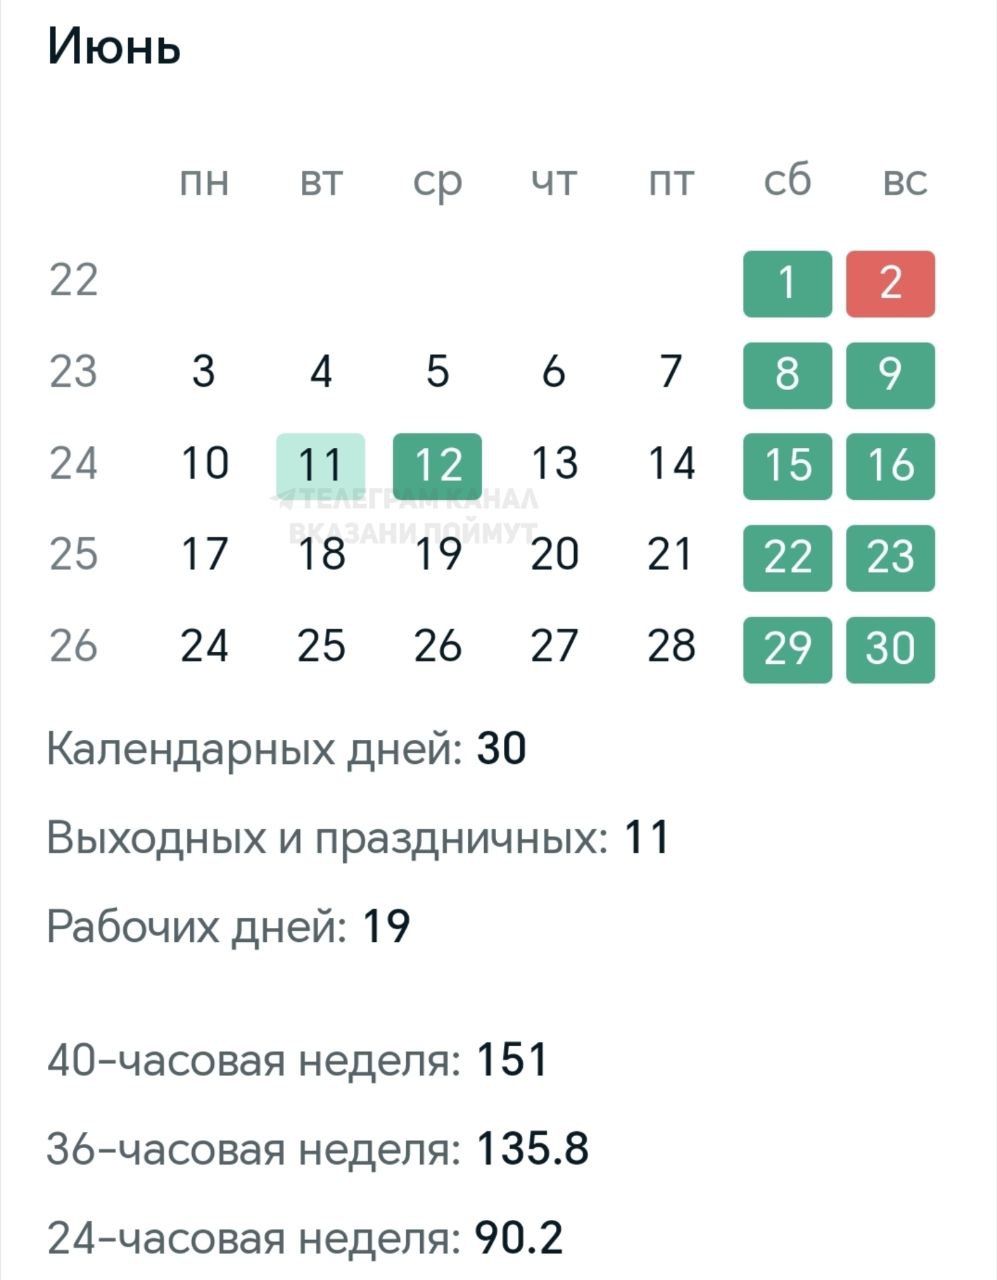 Жителям России напомнили о четырехдневной рабочей неделе в июне